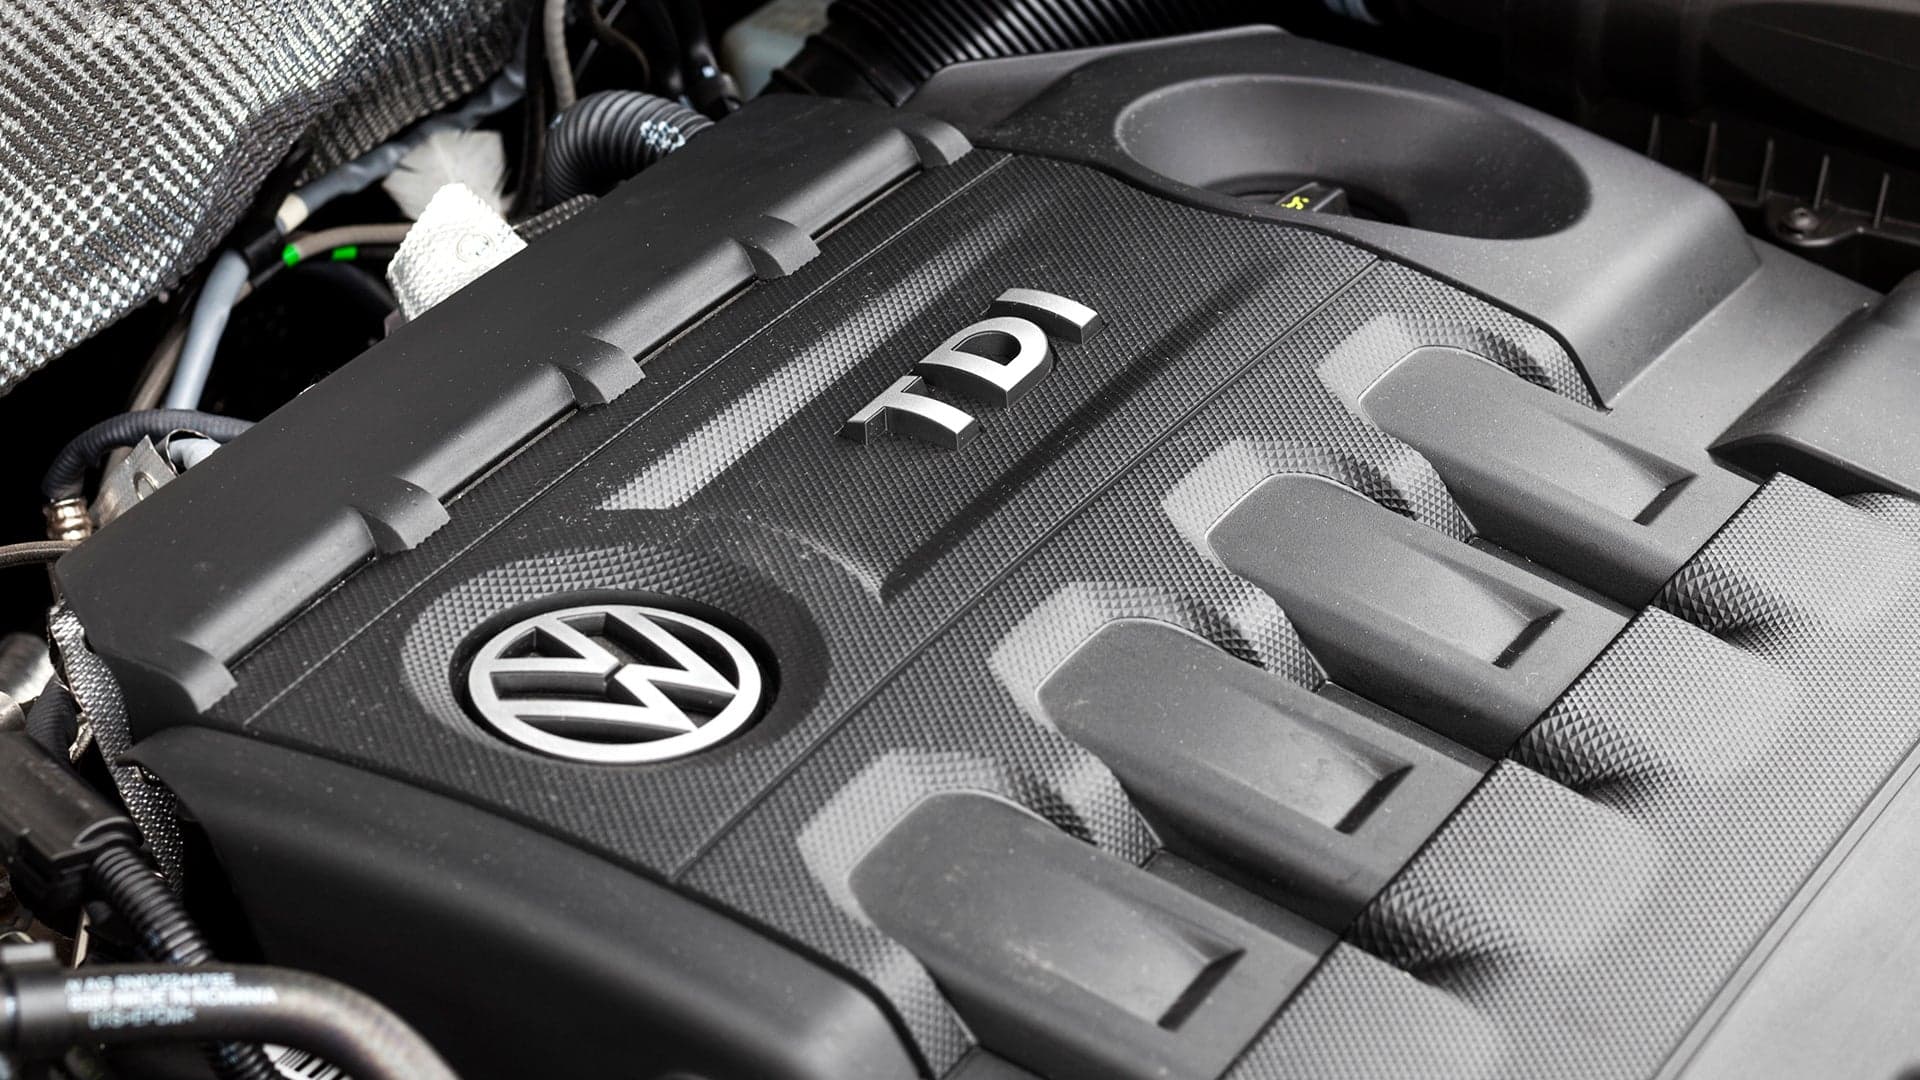 Volkswagen Under Investigation by E.U. for Illegal Diesel ‘Cartel’